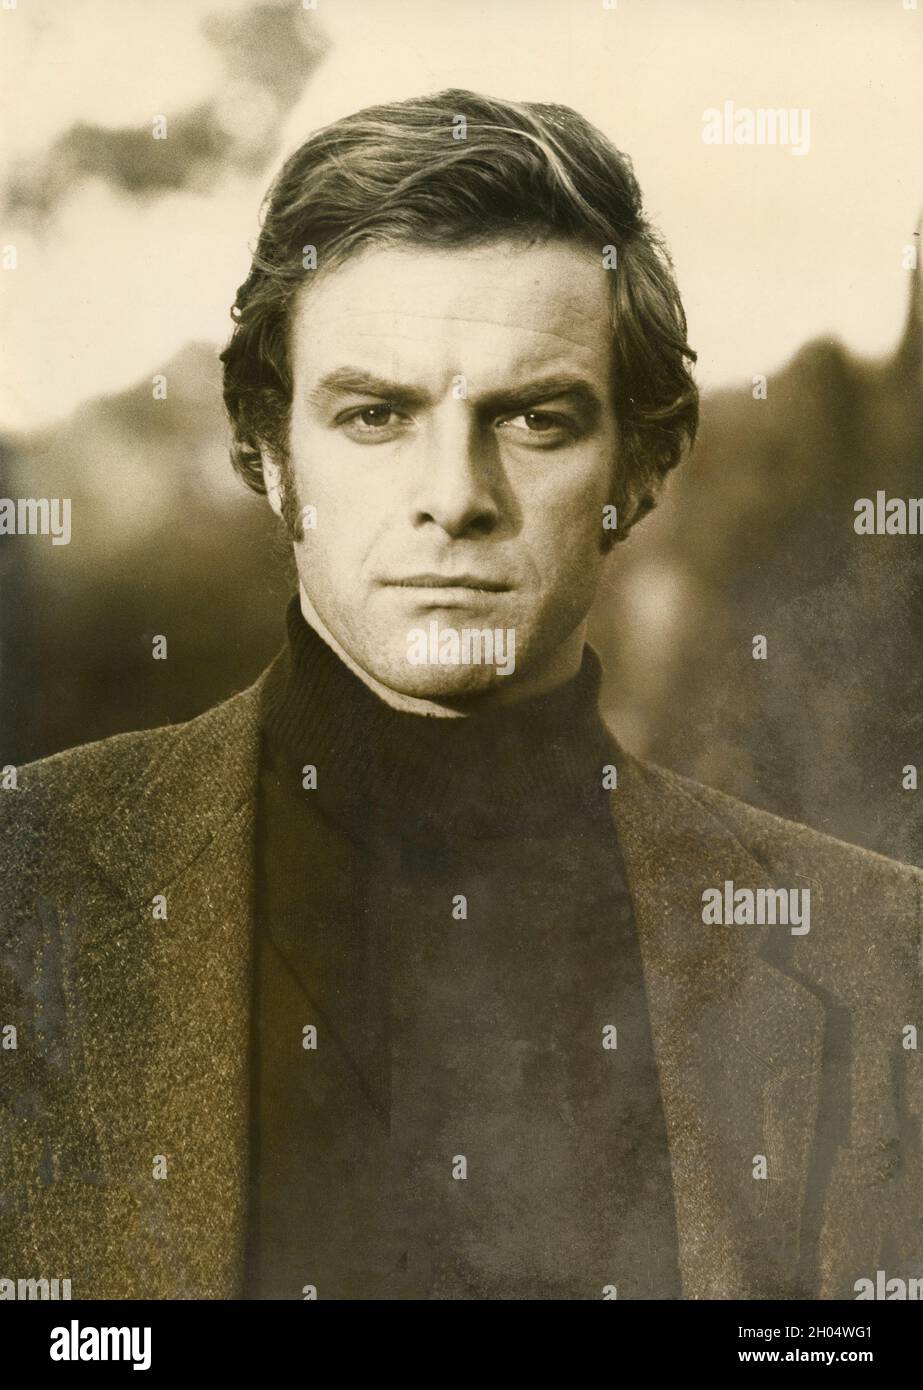 Italian actor Gianni Garko, 1970s Stock Photo